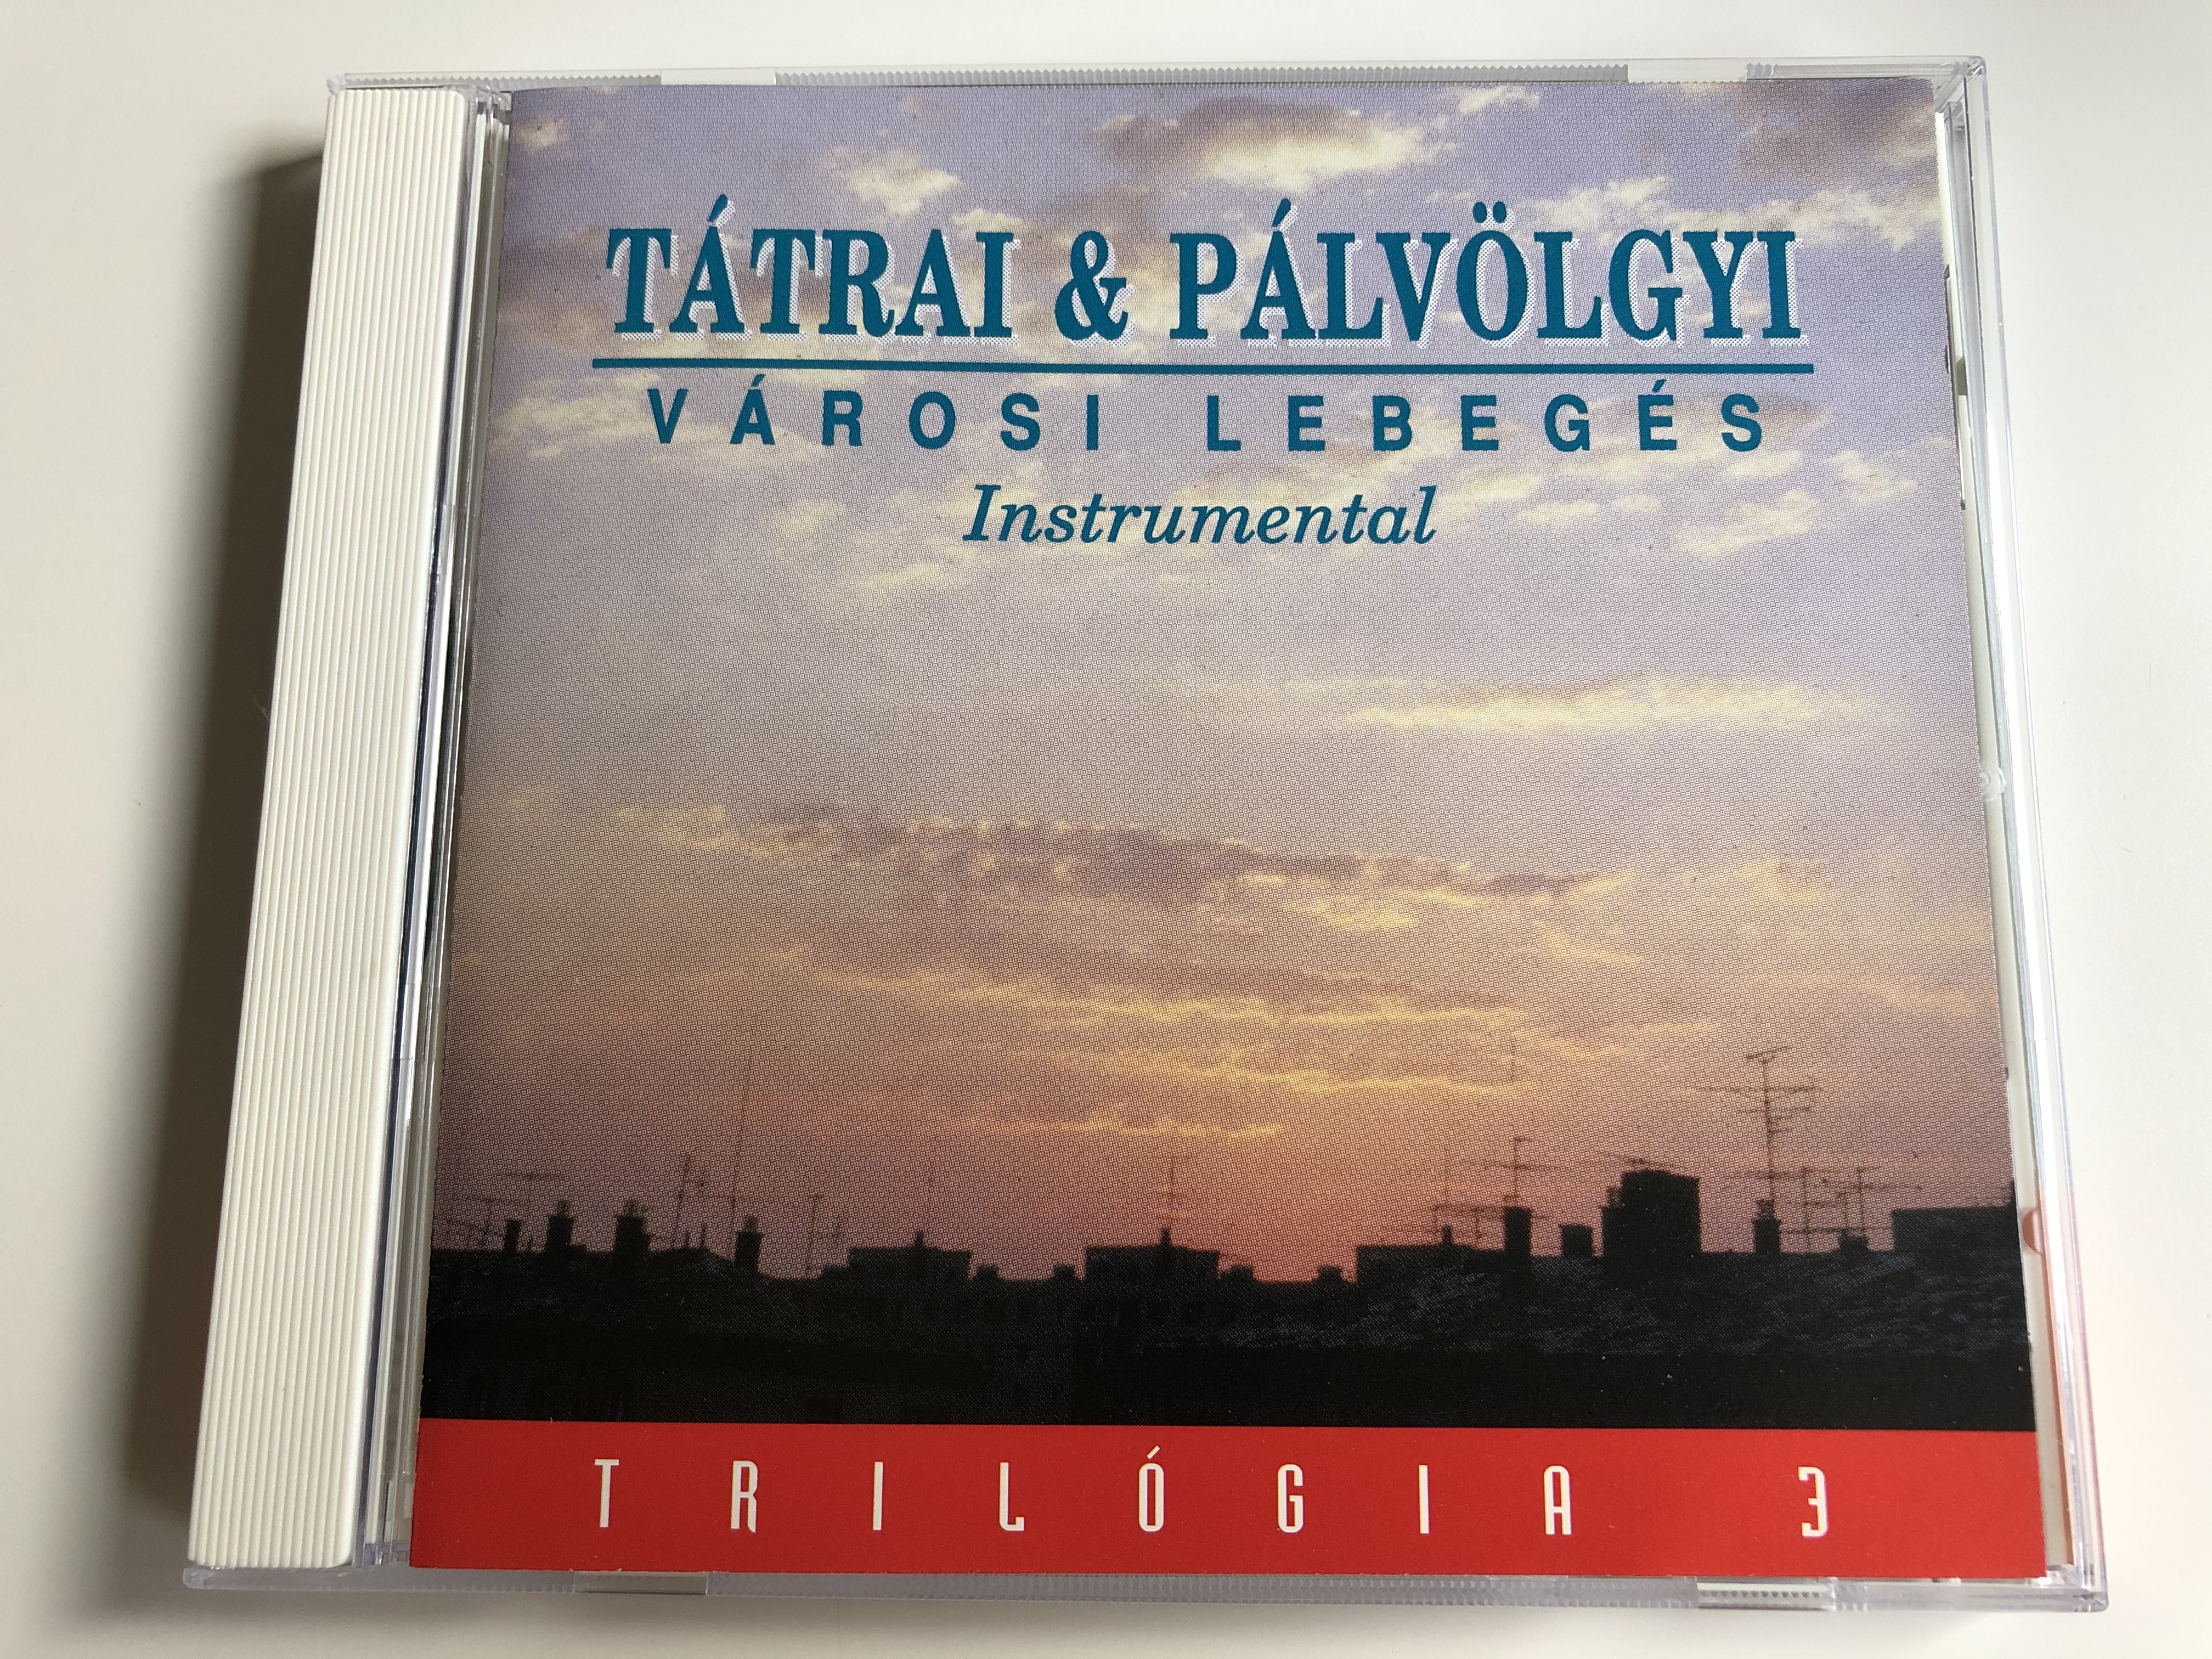 t-trai-palvolgyi-varosi-lebeges-instrumental-trilogia-3-magneoton-audio-cd-0630-16849-2-1-.jpg